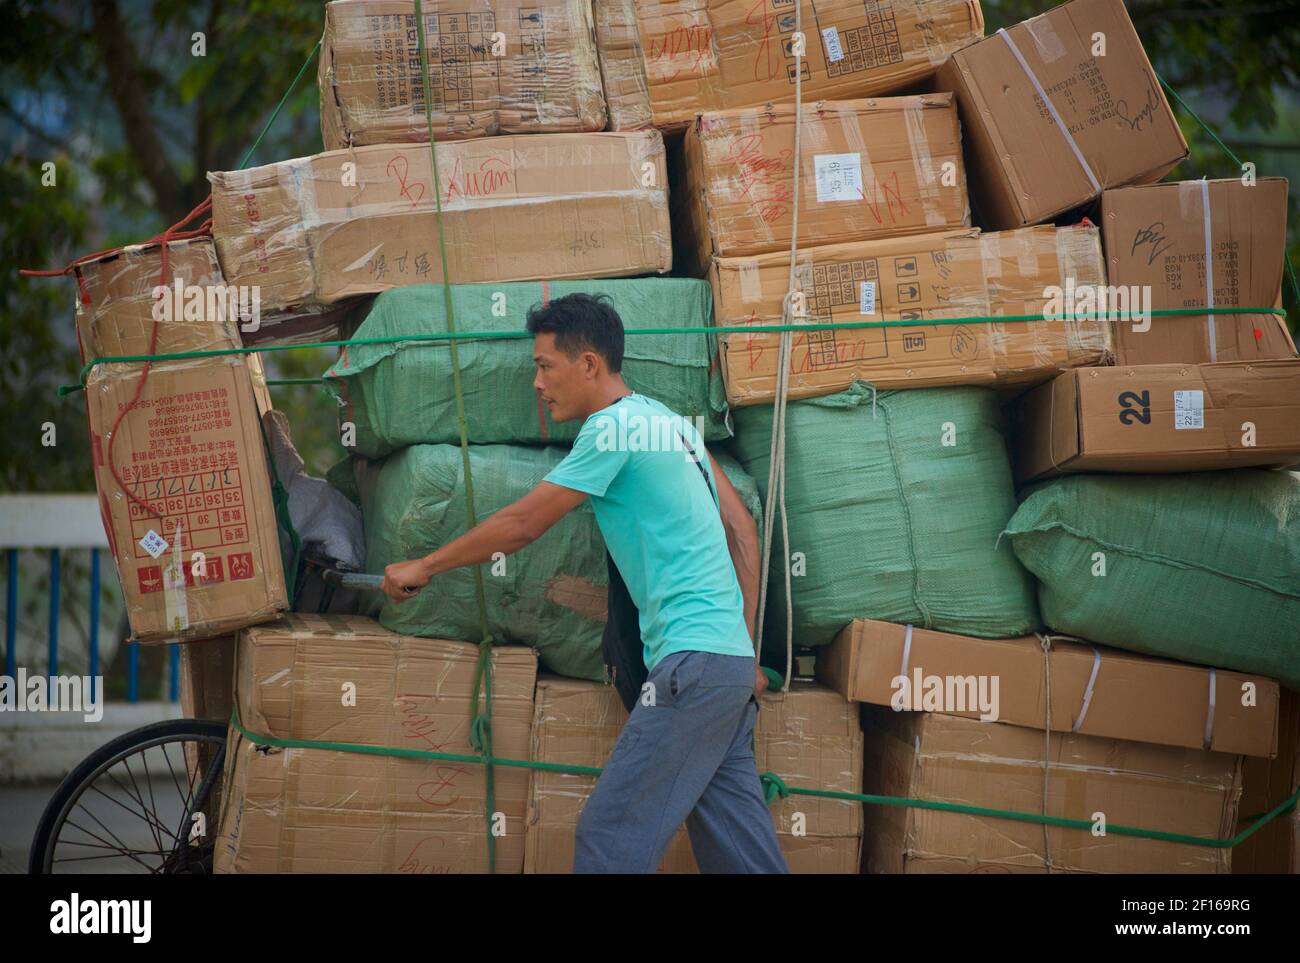 Hombre transportando una gran cantidad de cajas apiladas en su bicicleta importando a través de una frontera terrestre desde China a Vietnam. Hekouzhen a Lao Cai cruzando el puente Cau Ho Kieu. Foto de stock